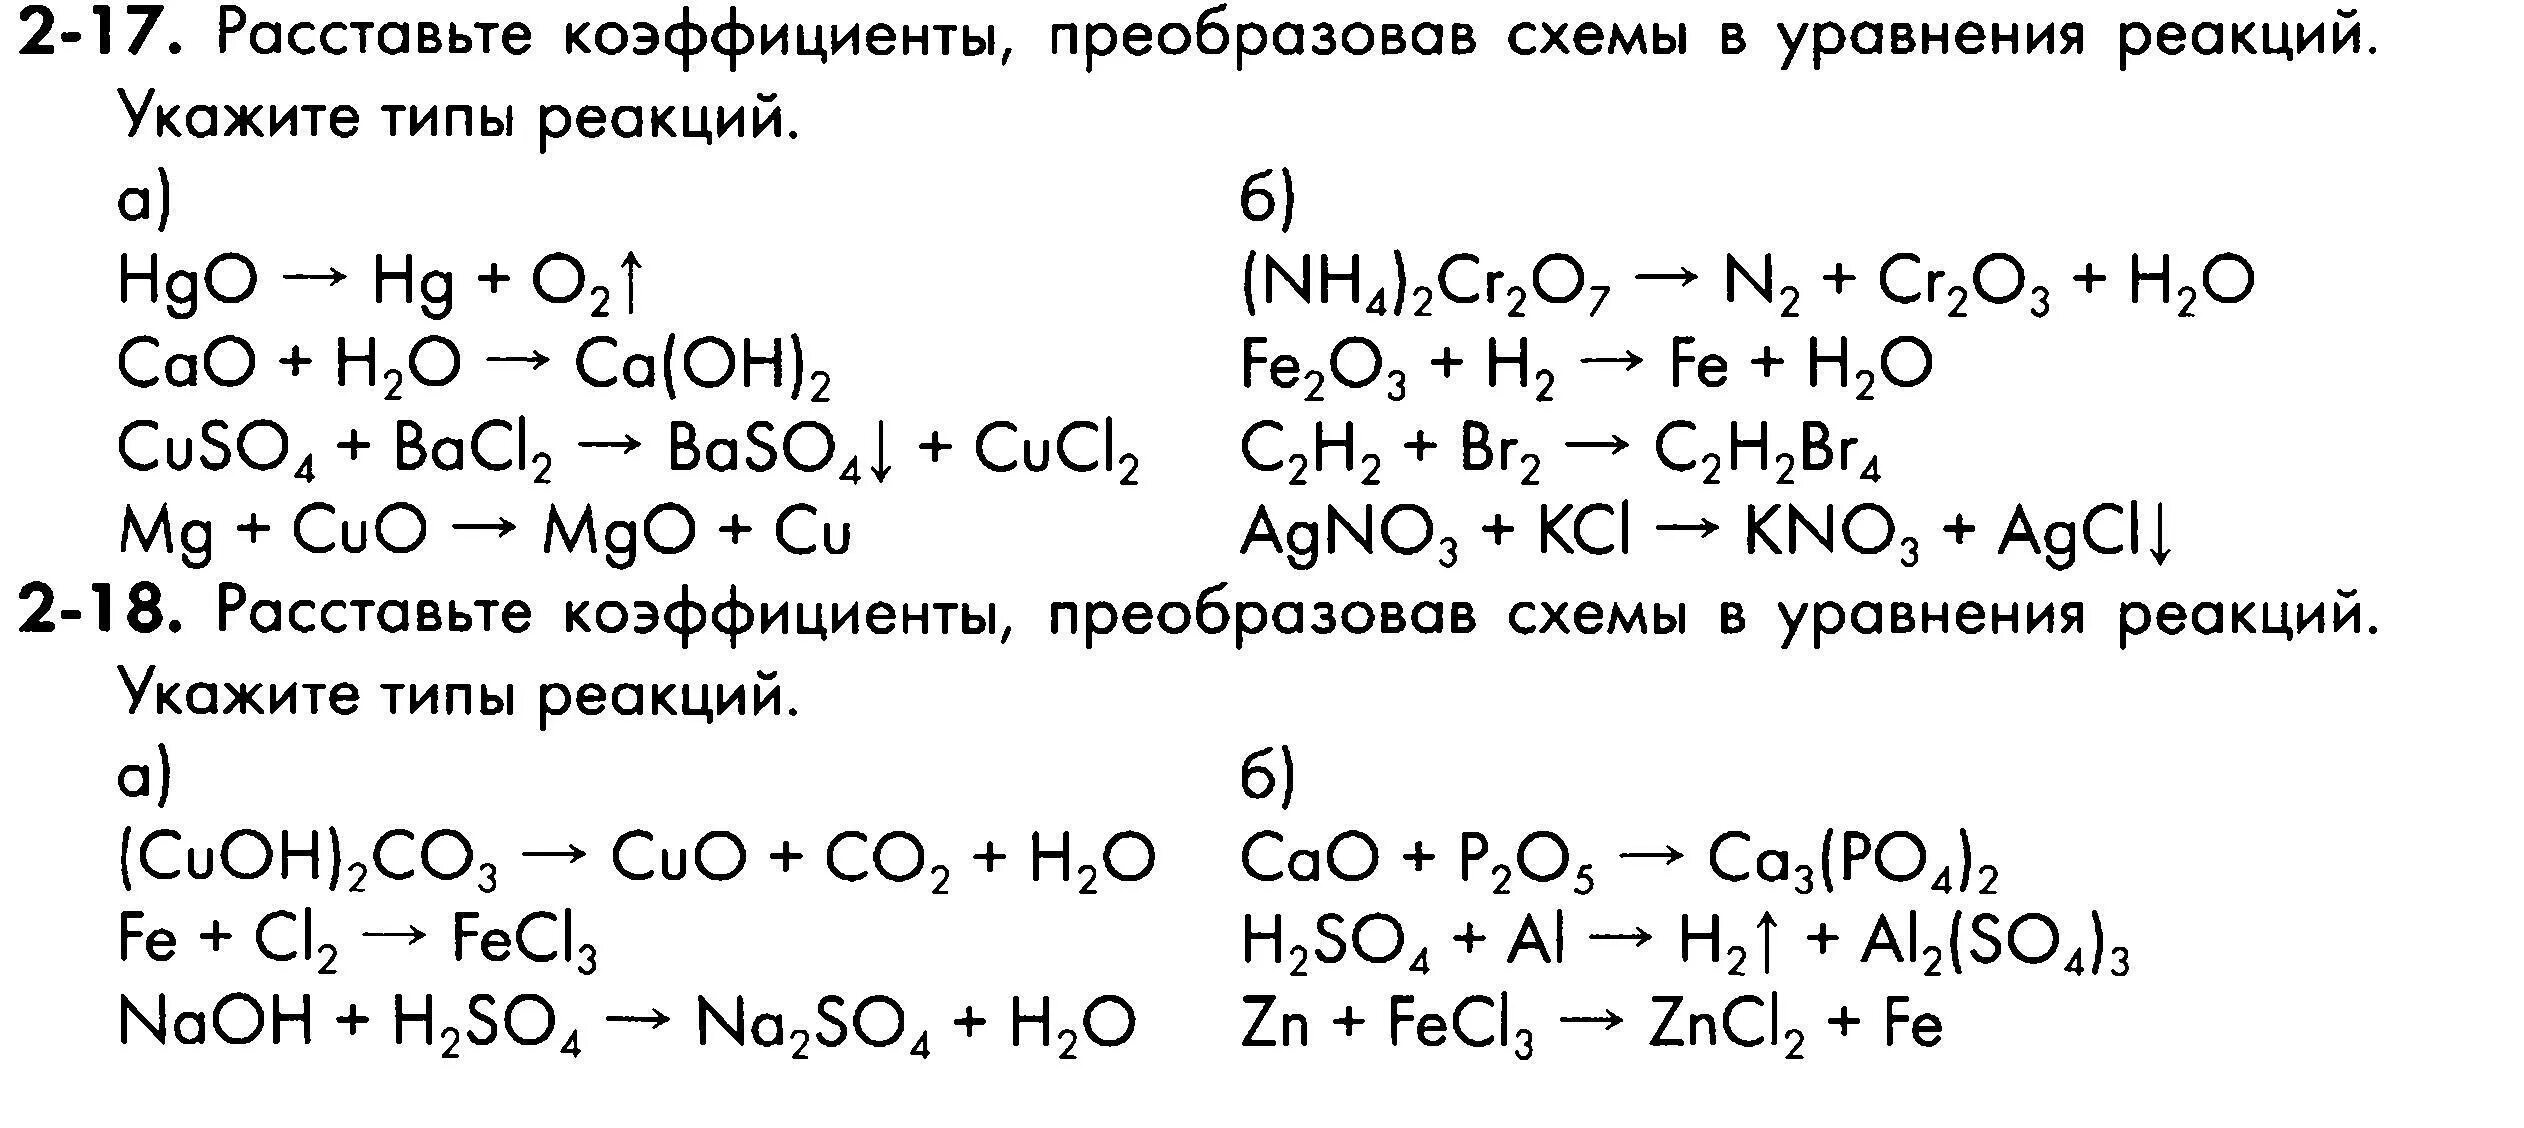 Уравнения химических реакций 8 класс задания. Химия 8 класс схемы химических реакций. Химия схема реакций уравнений. Уравнения реакций химия 8 класс.